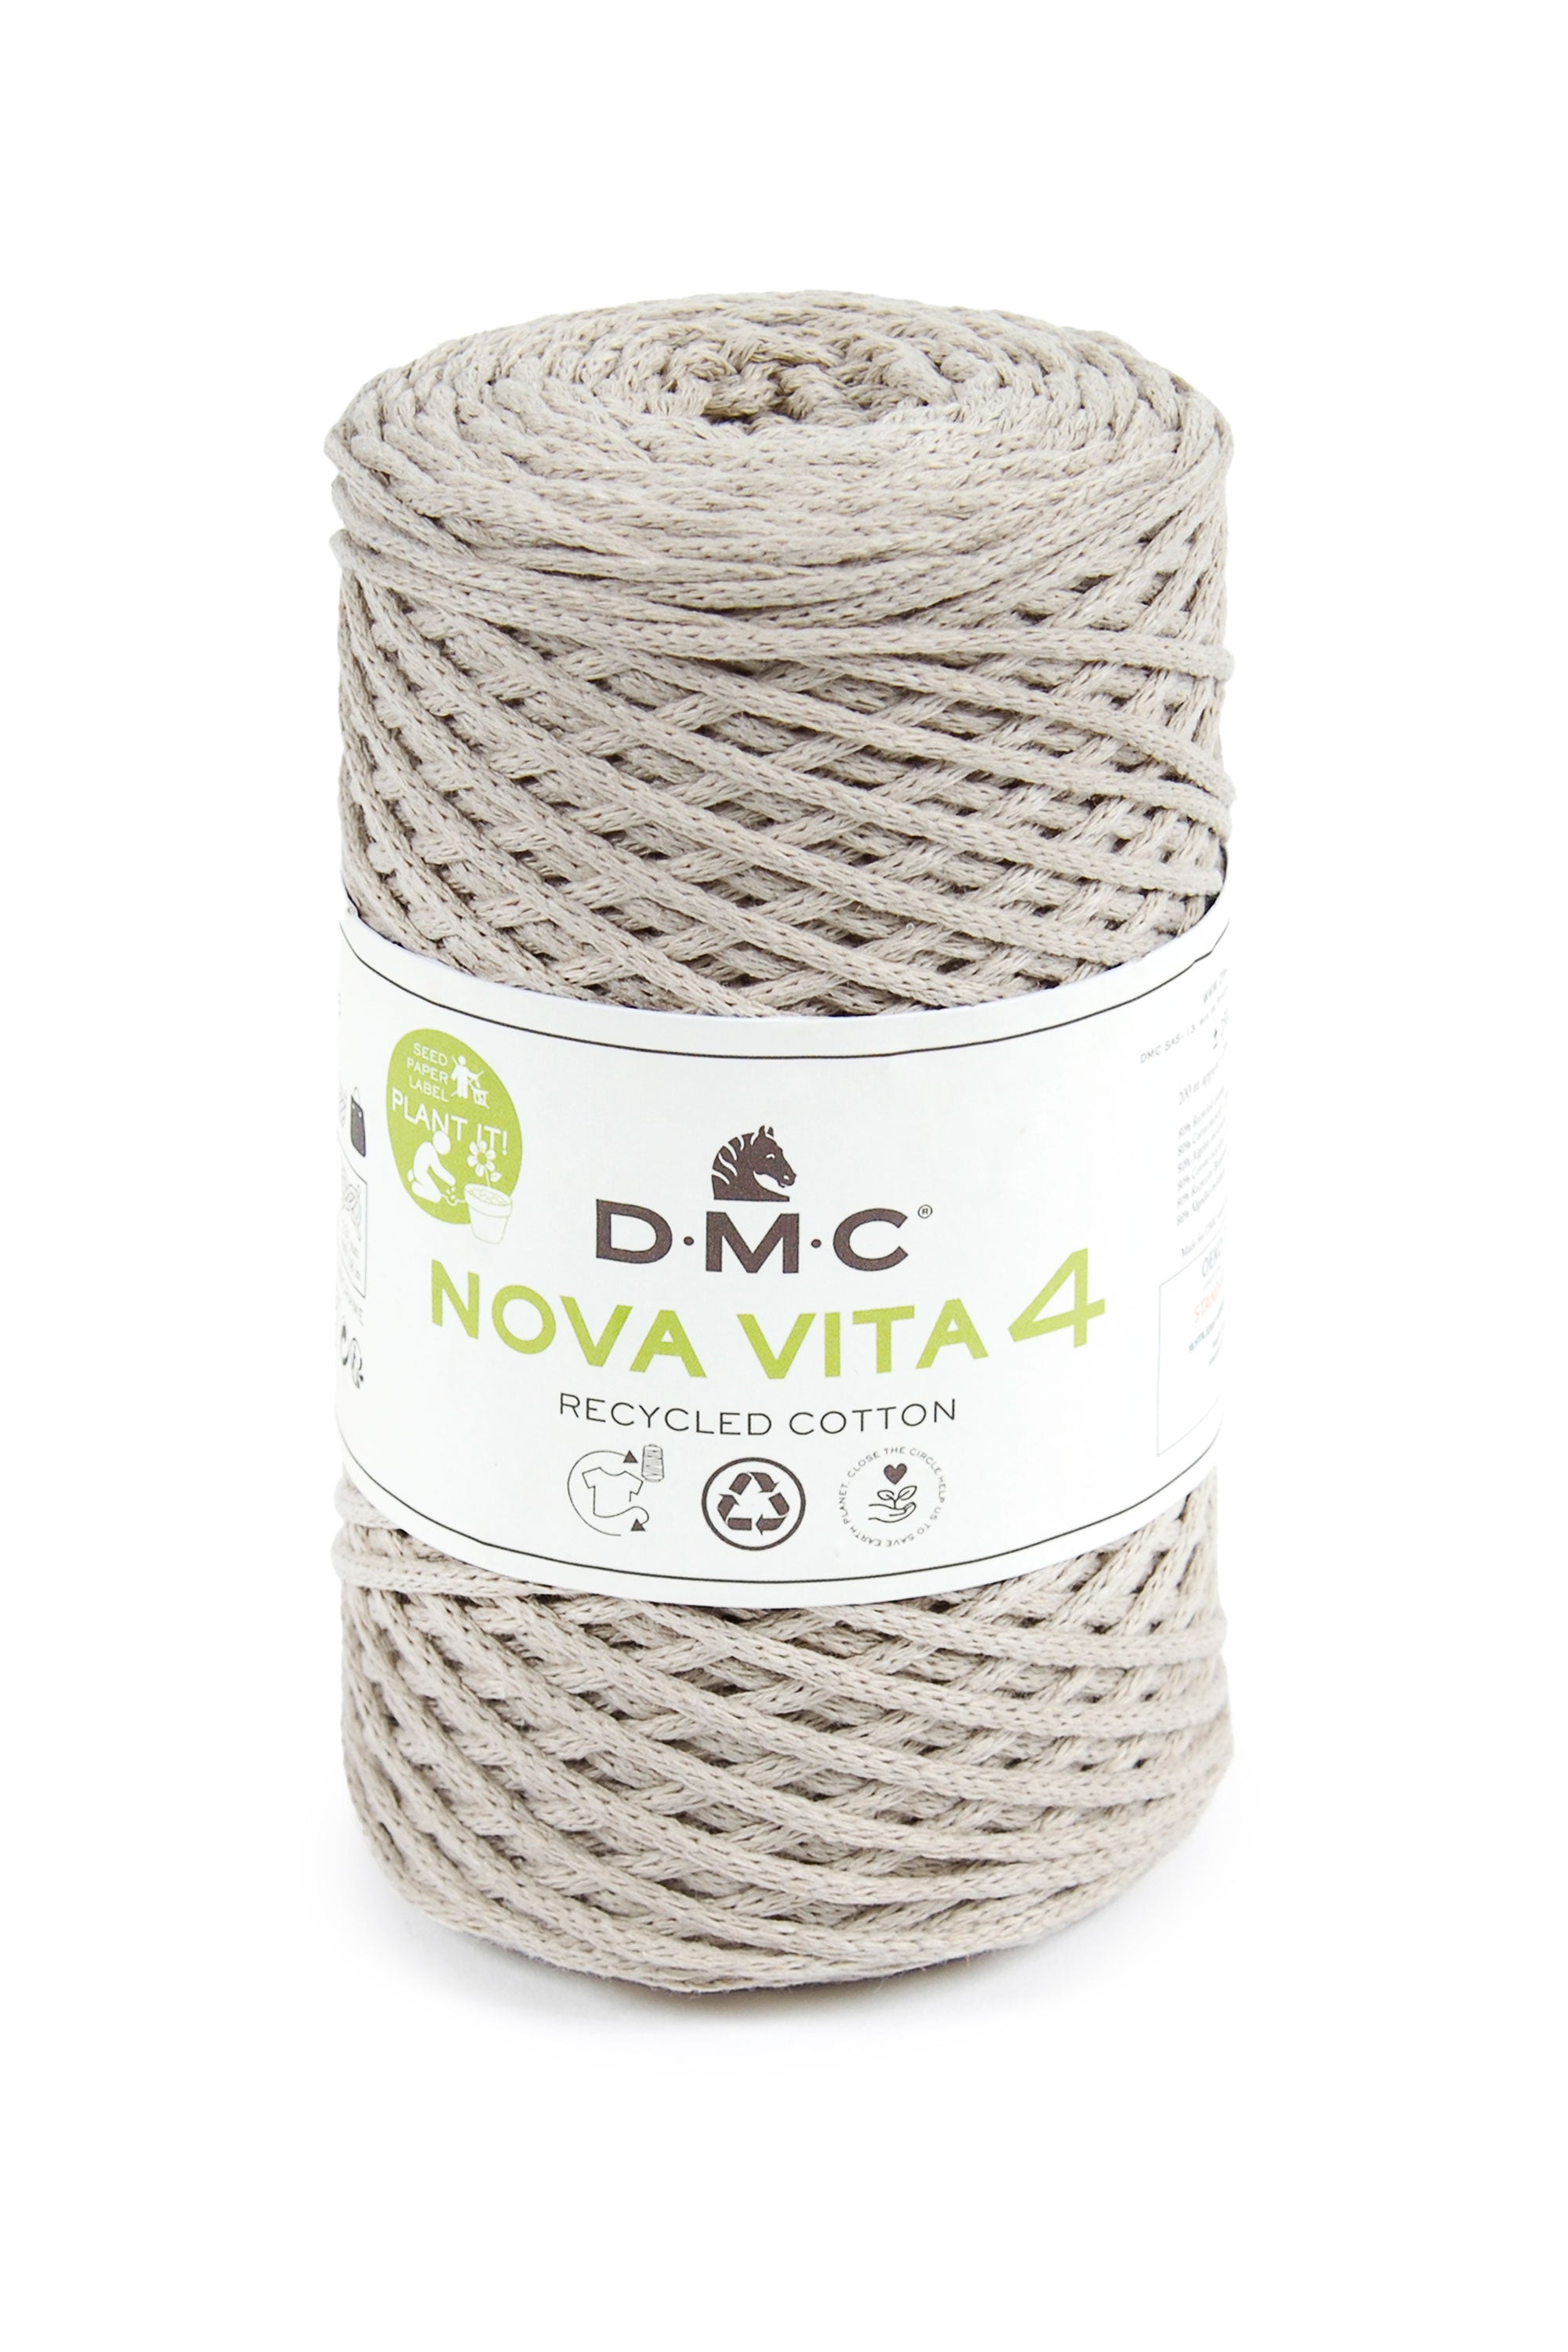 DMC Nova Vita 4 - Crochet, Tricot and Macrame threads